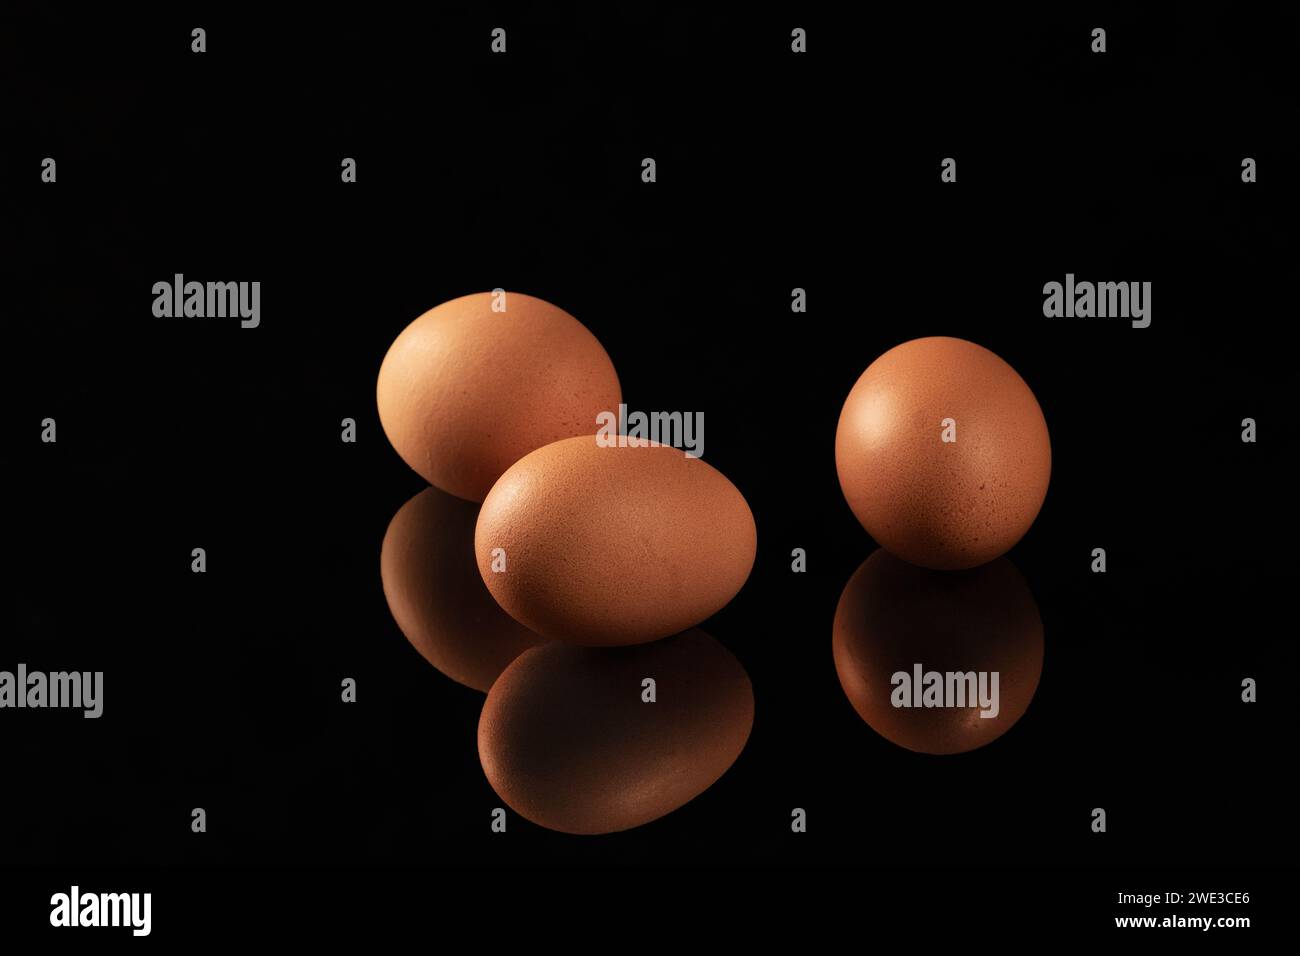 Un'immagine visivamente sorprendente che cattura il riflesso delle uova di gallina marroni su una superficie lucida e nera a specchio, creando una c Foto Stock